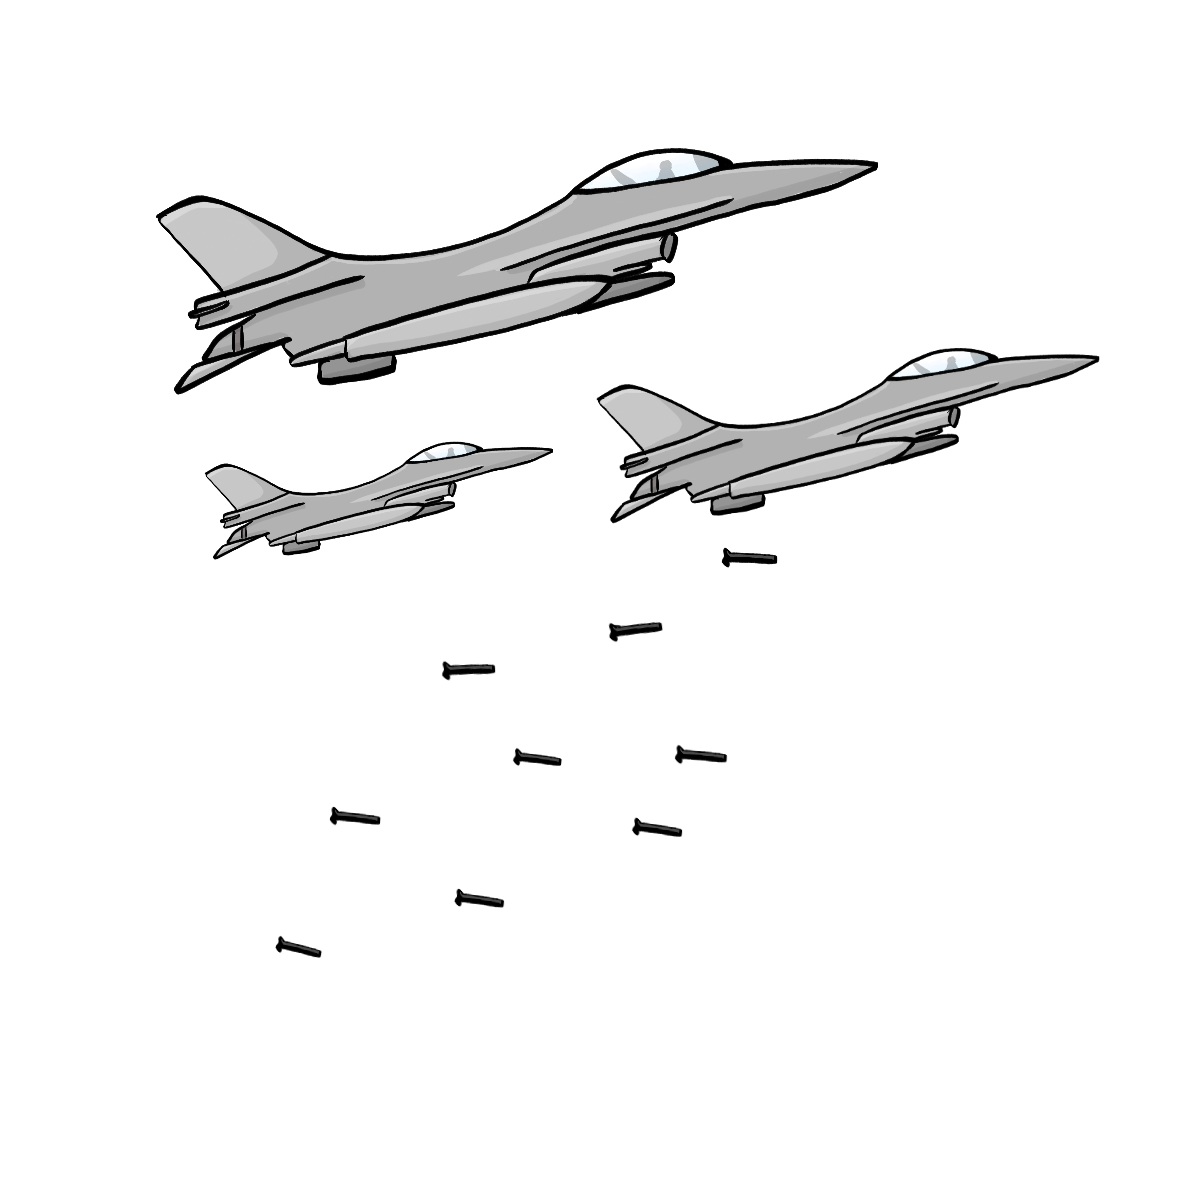 Drei Kampf-Flugzeuge. Die Flugzeuge werfen Bomben ab. 